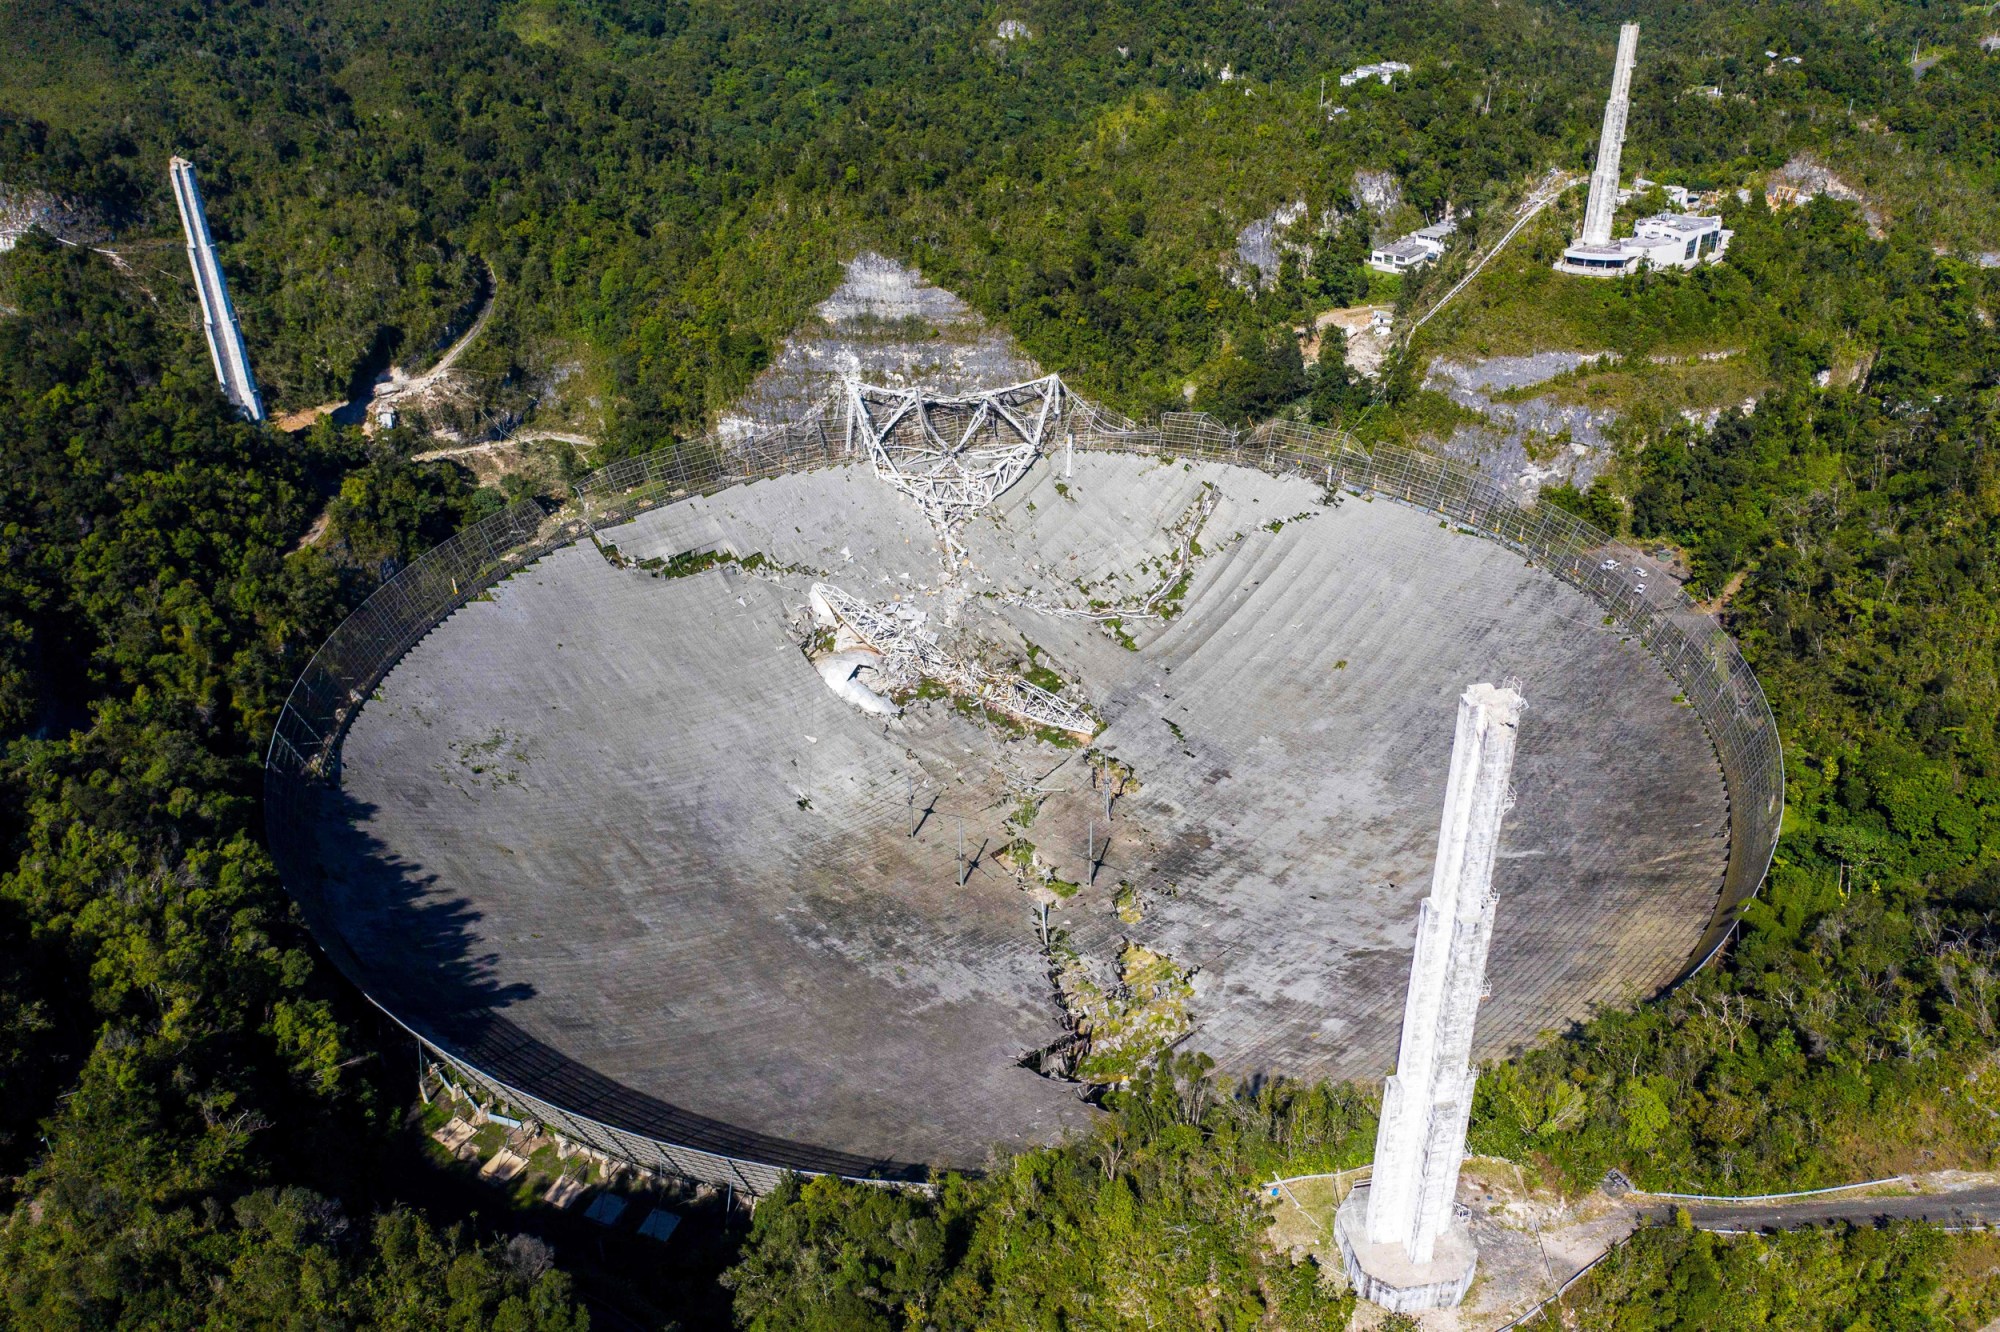 201201-arecibo-observatory-jm-1250_e89624ef19ae1f99f63320560f64a56e.fit-2000w.jpg